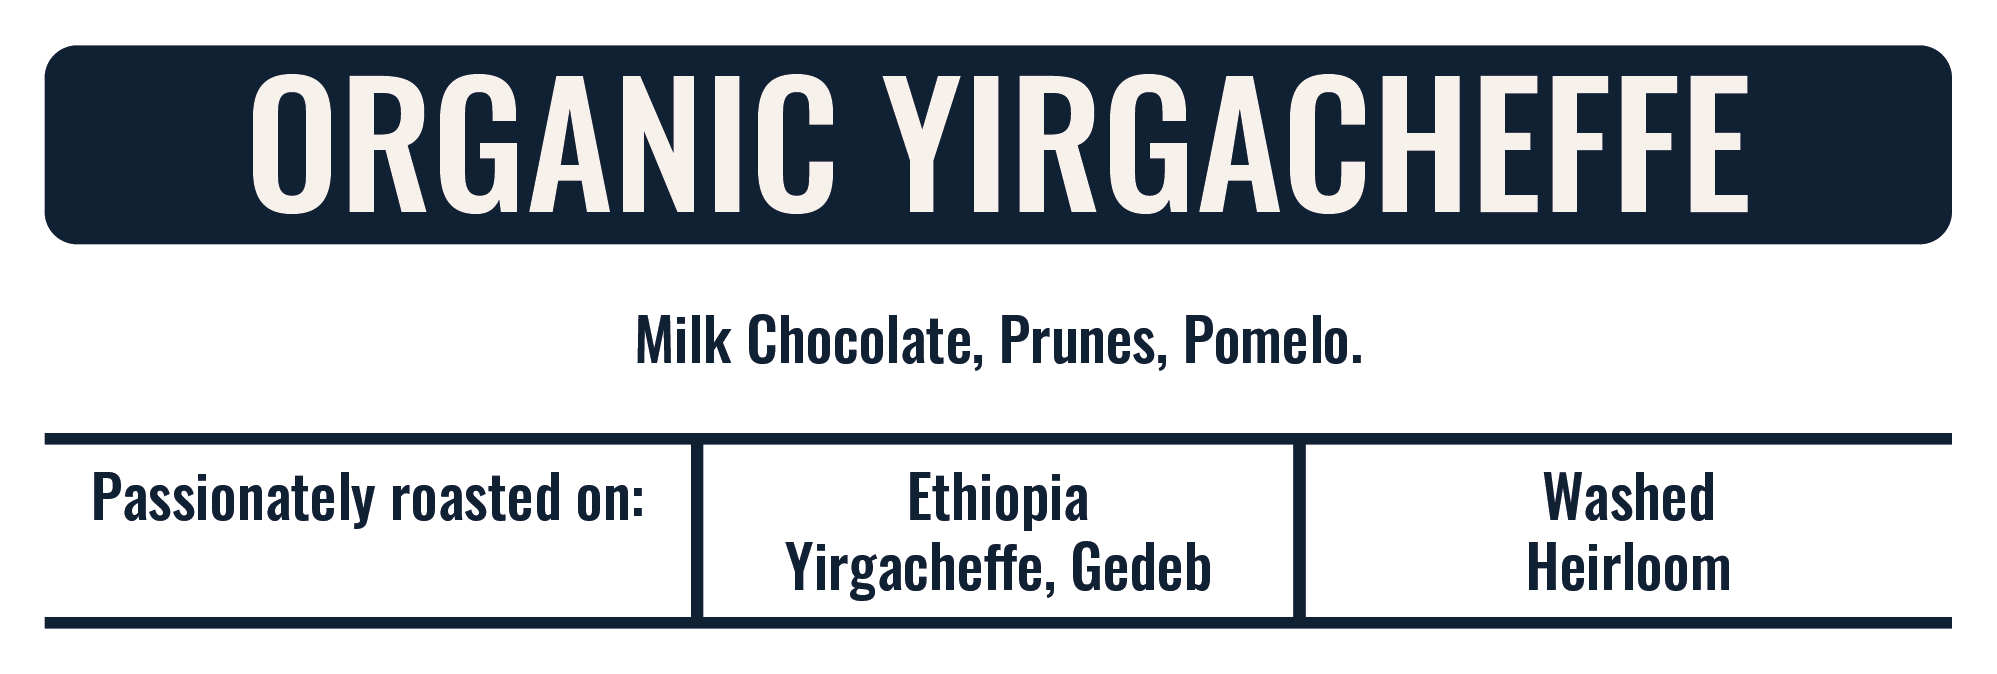 Organic Yirgacheffe